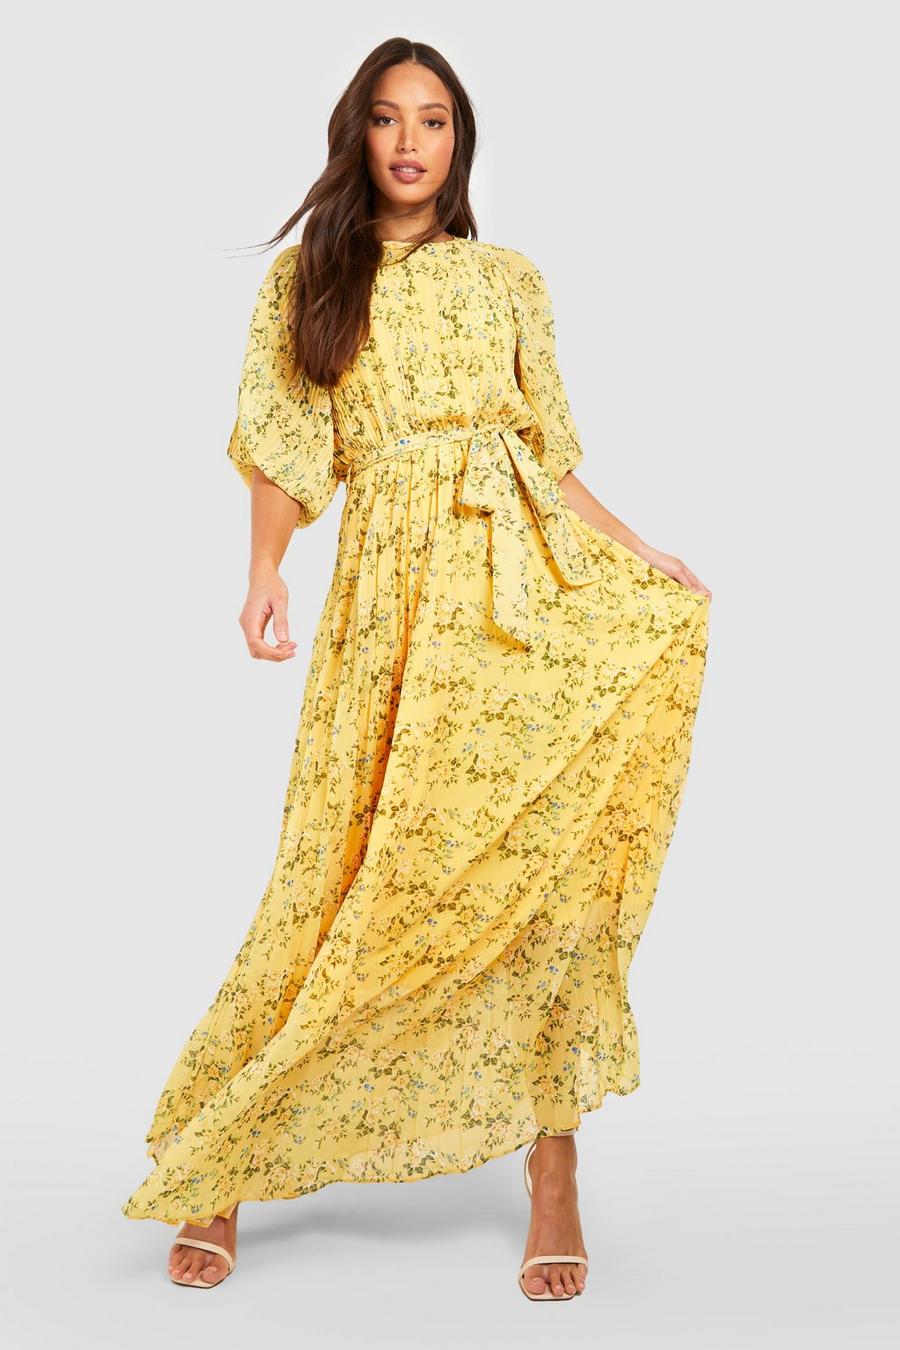 צהוב שמלת מידי פרחונית עם שרוולים תפוחים וקפלים, לנשים גבוהות